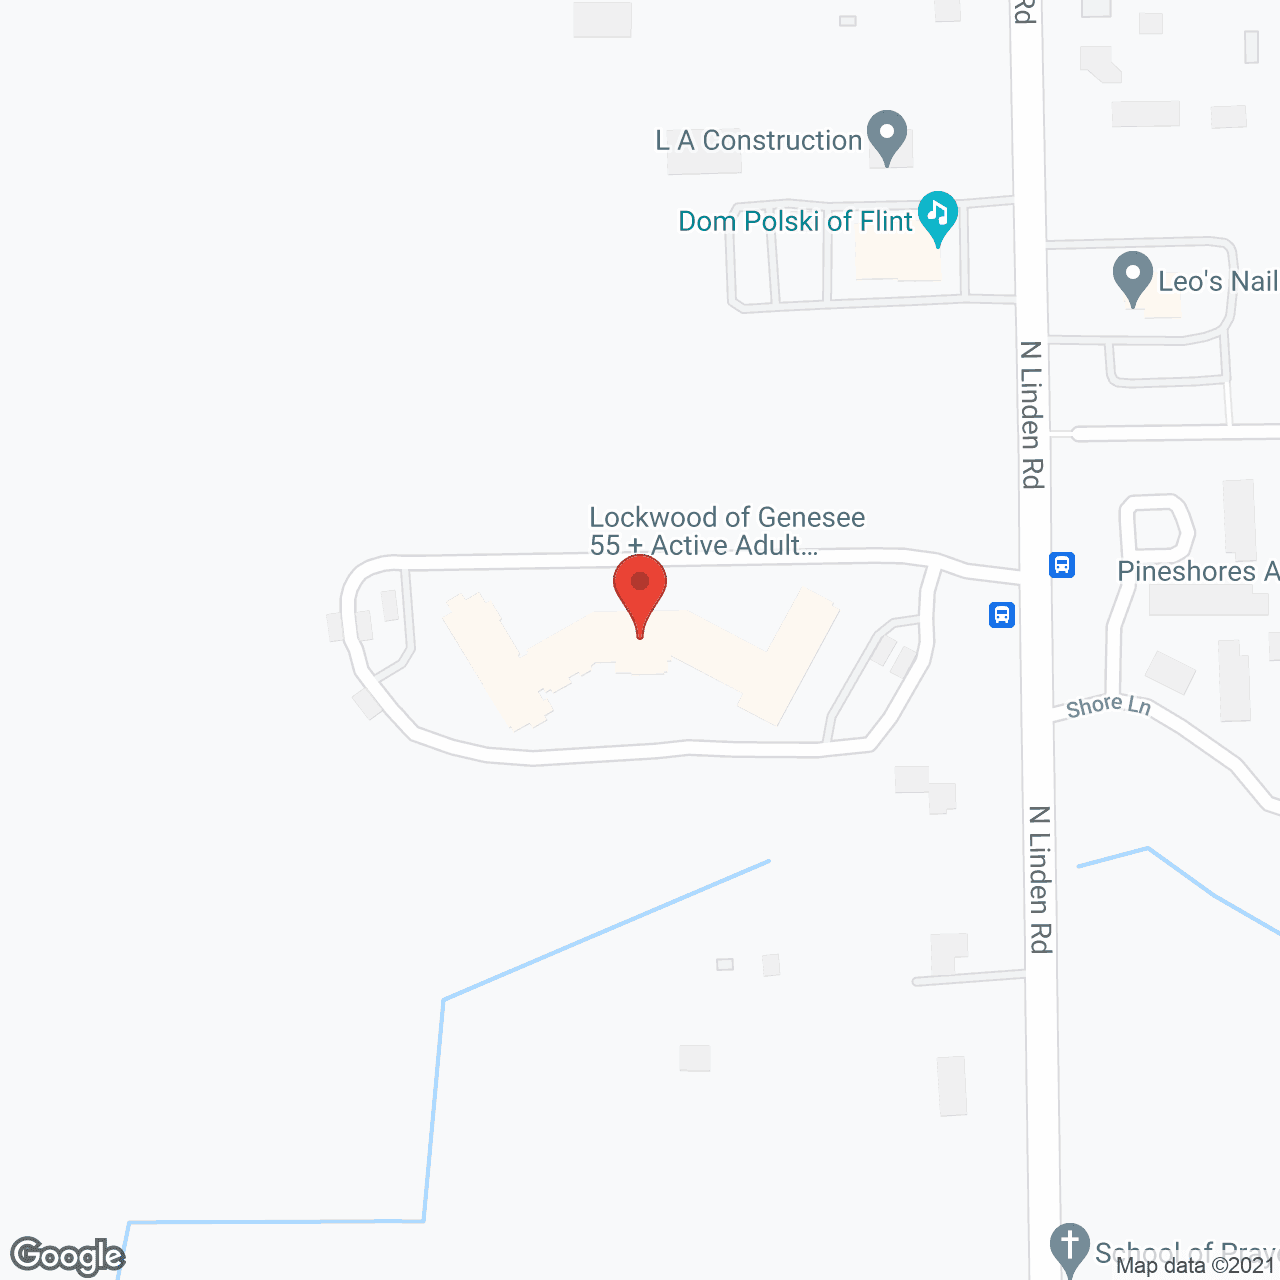 Lockwood of Genesee in google map